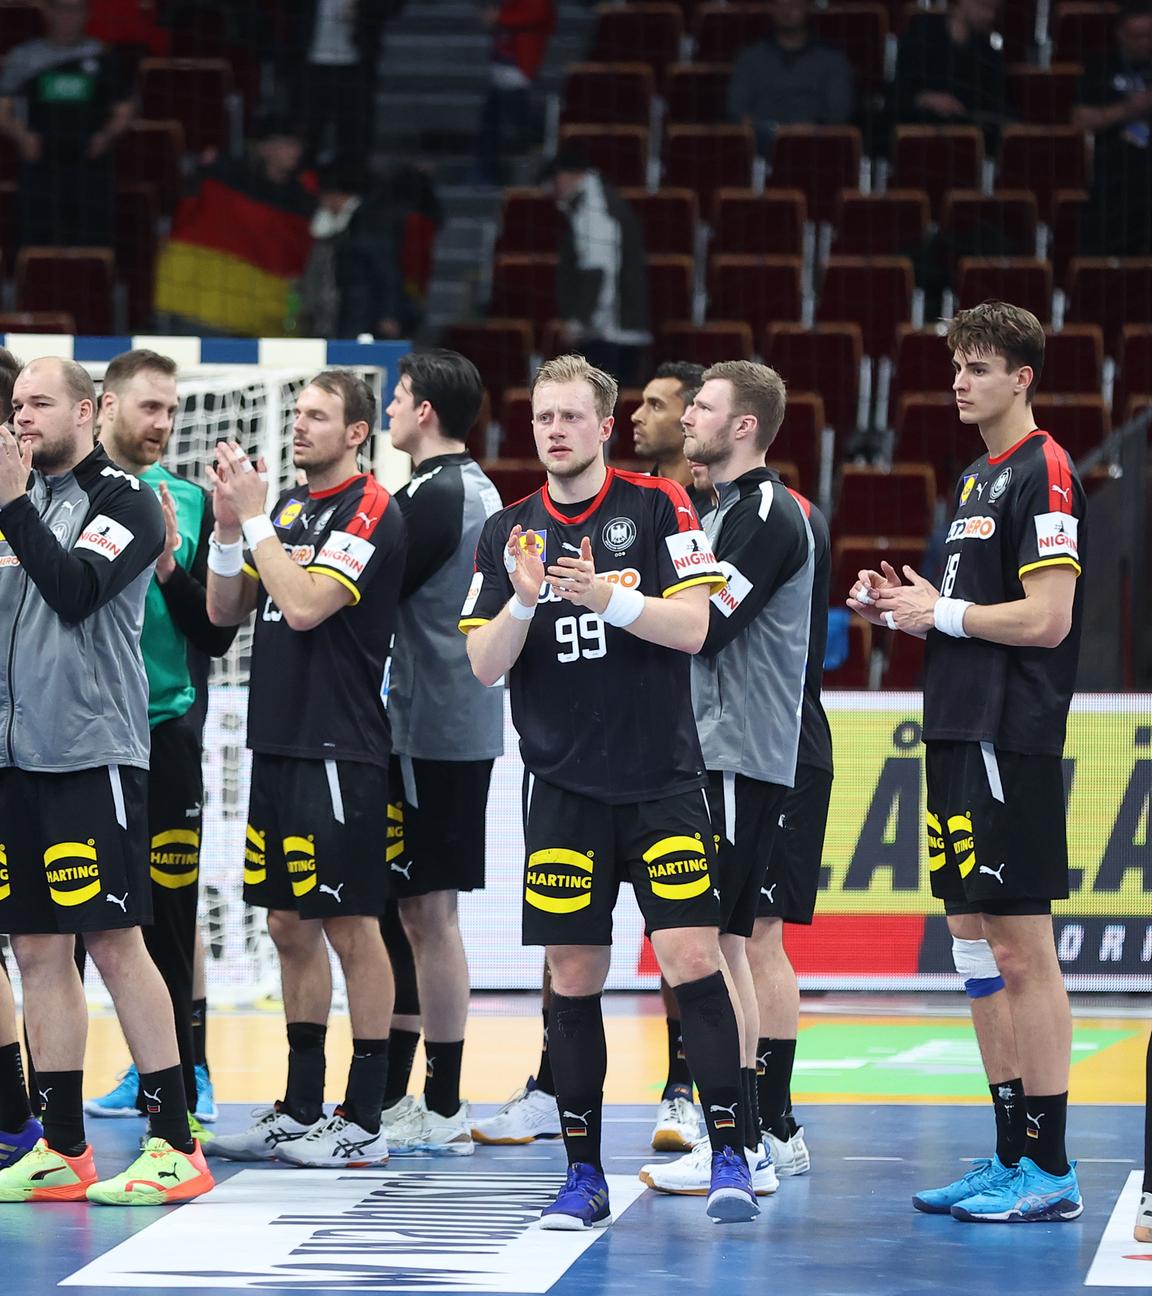 WM, Frankreich - Deutschland, Finalrunde, Viertelfinale in der Ergo Arena, Deutschlands Spieler applaudieren nach dem Spiel.